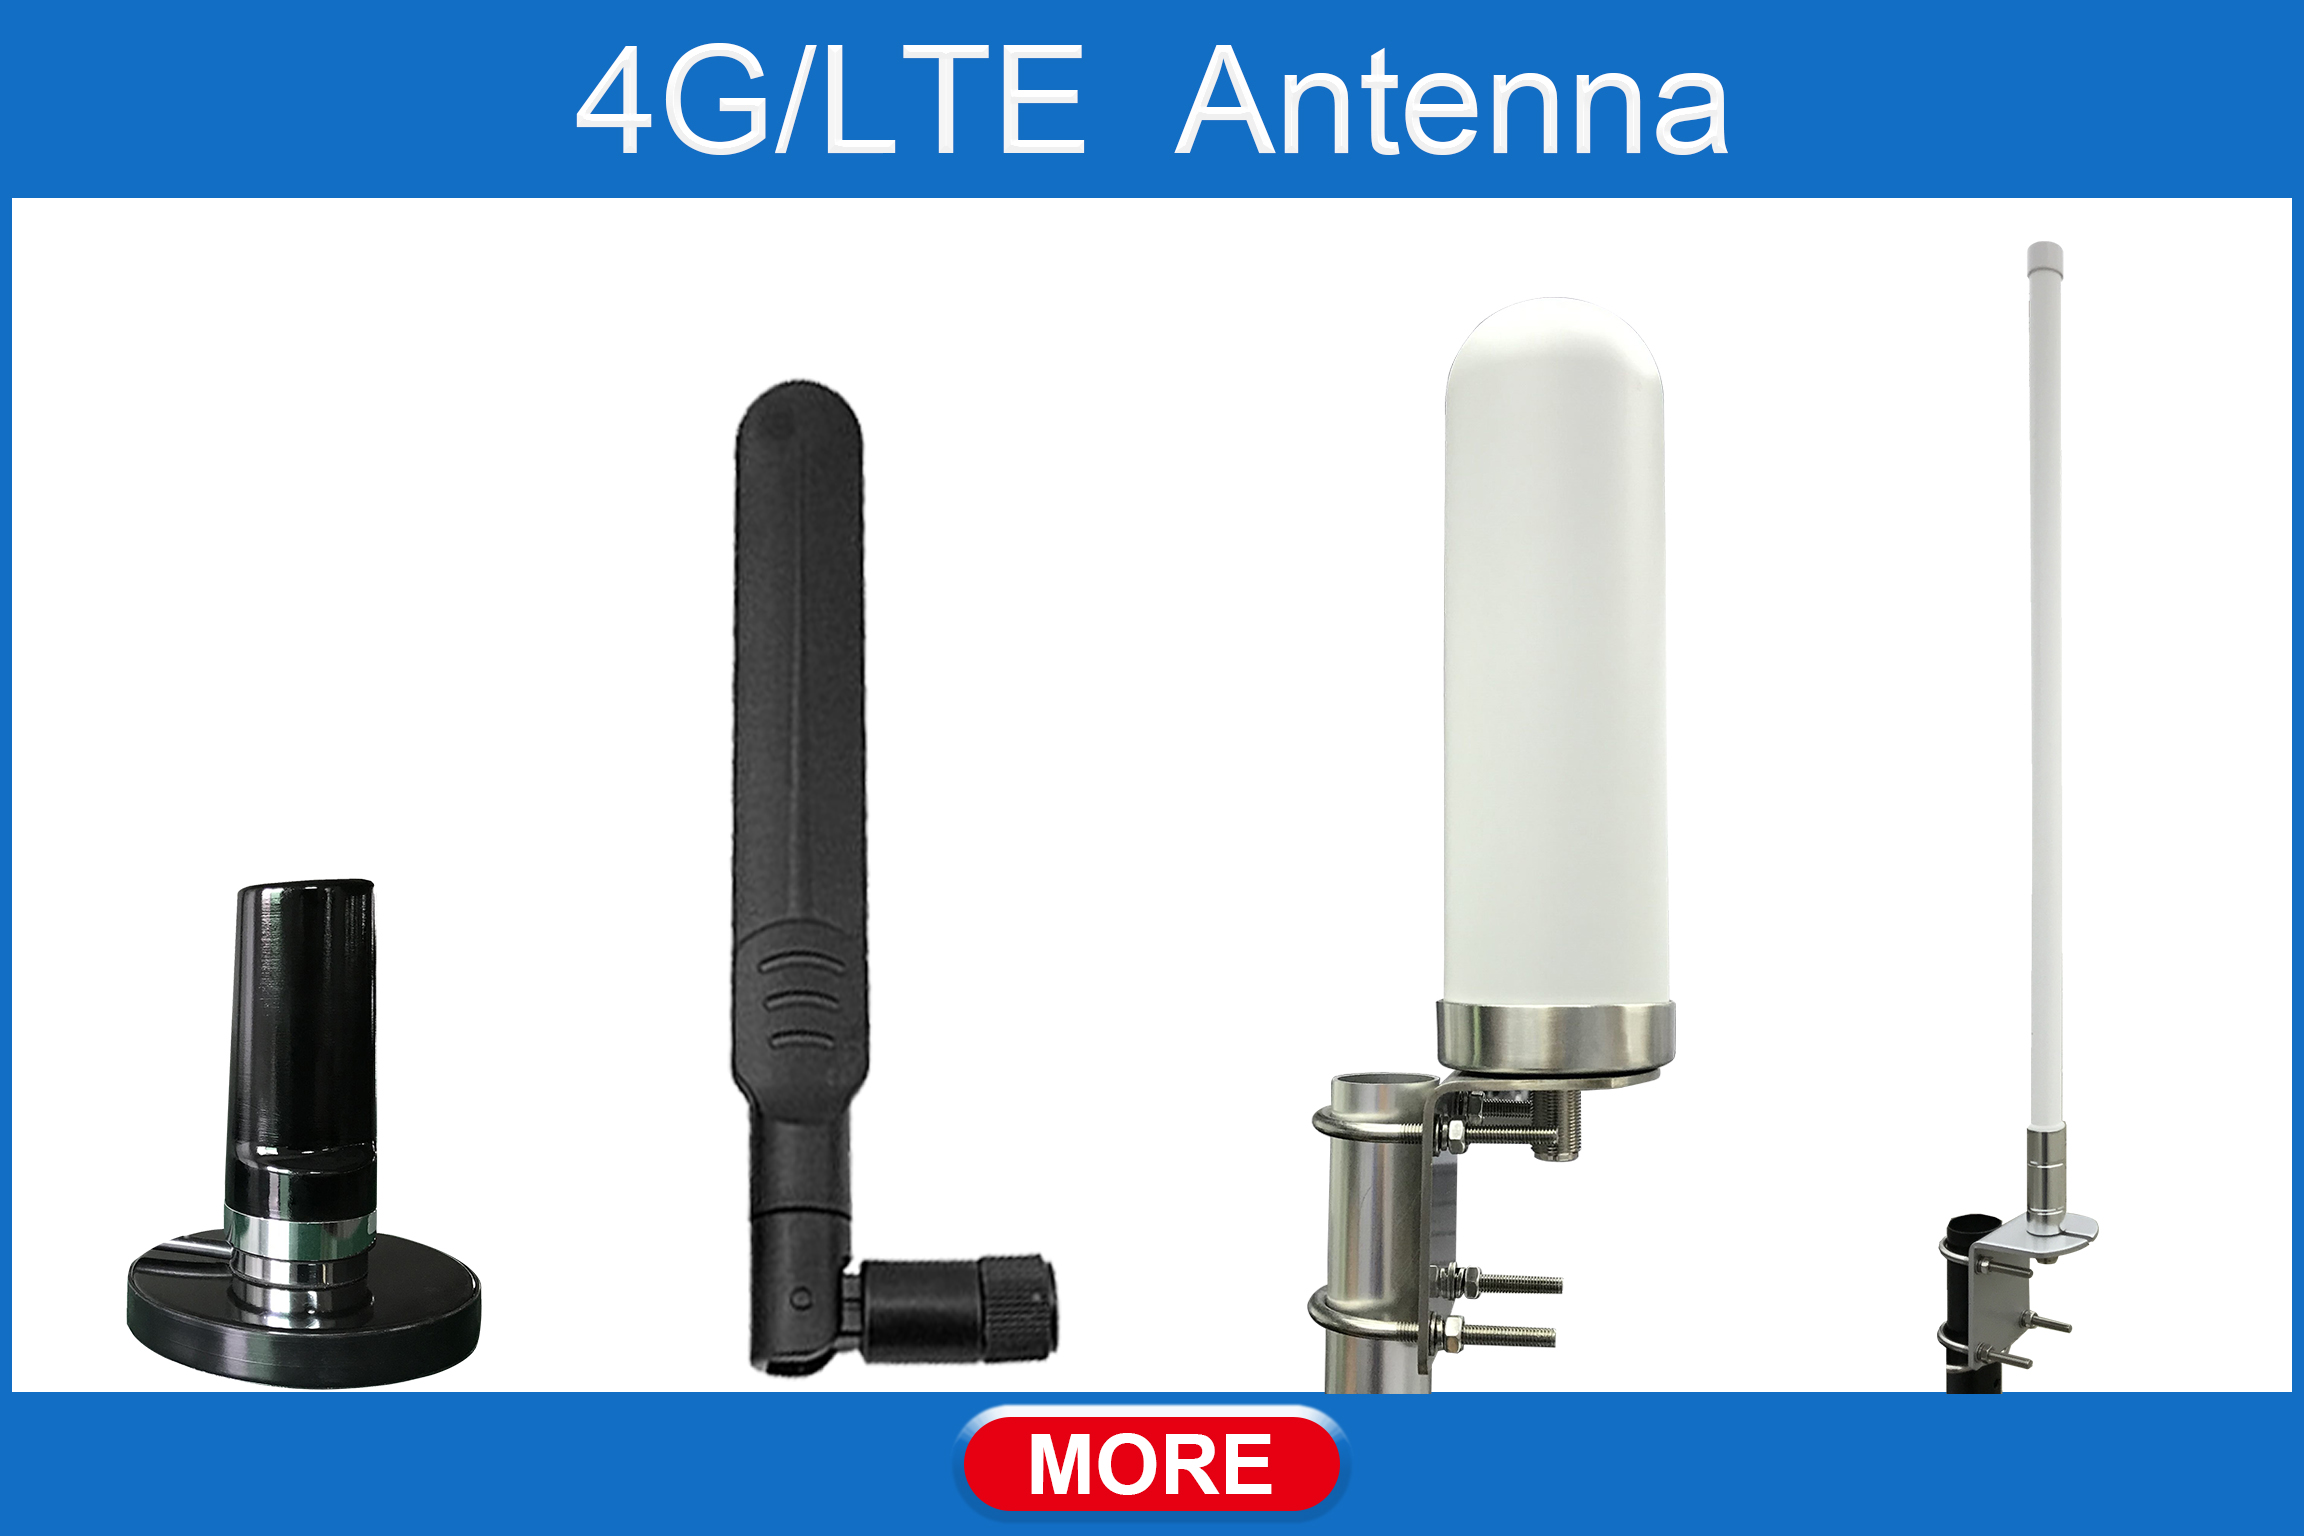 4G/LTE Antenna